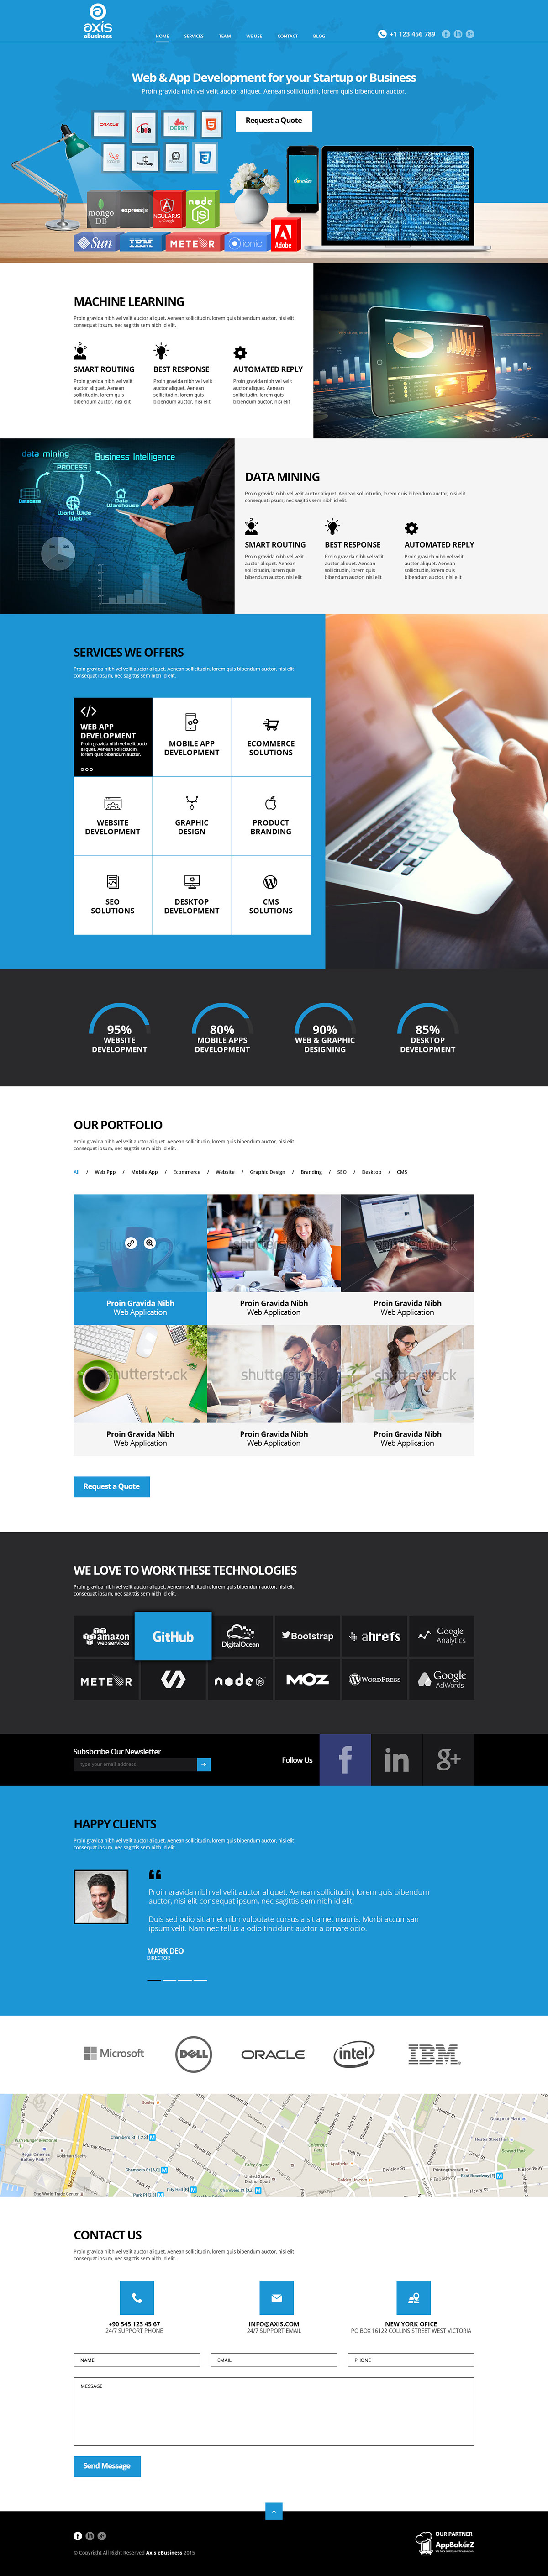 Website Design home page design Creative Design graphic designing illustration design company website